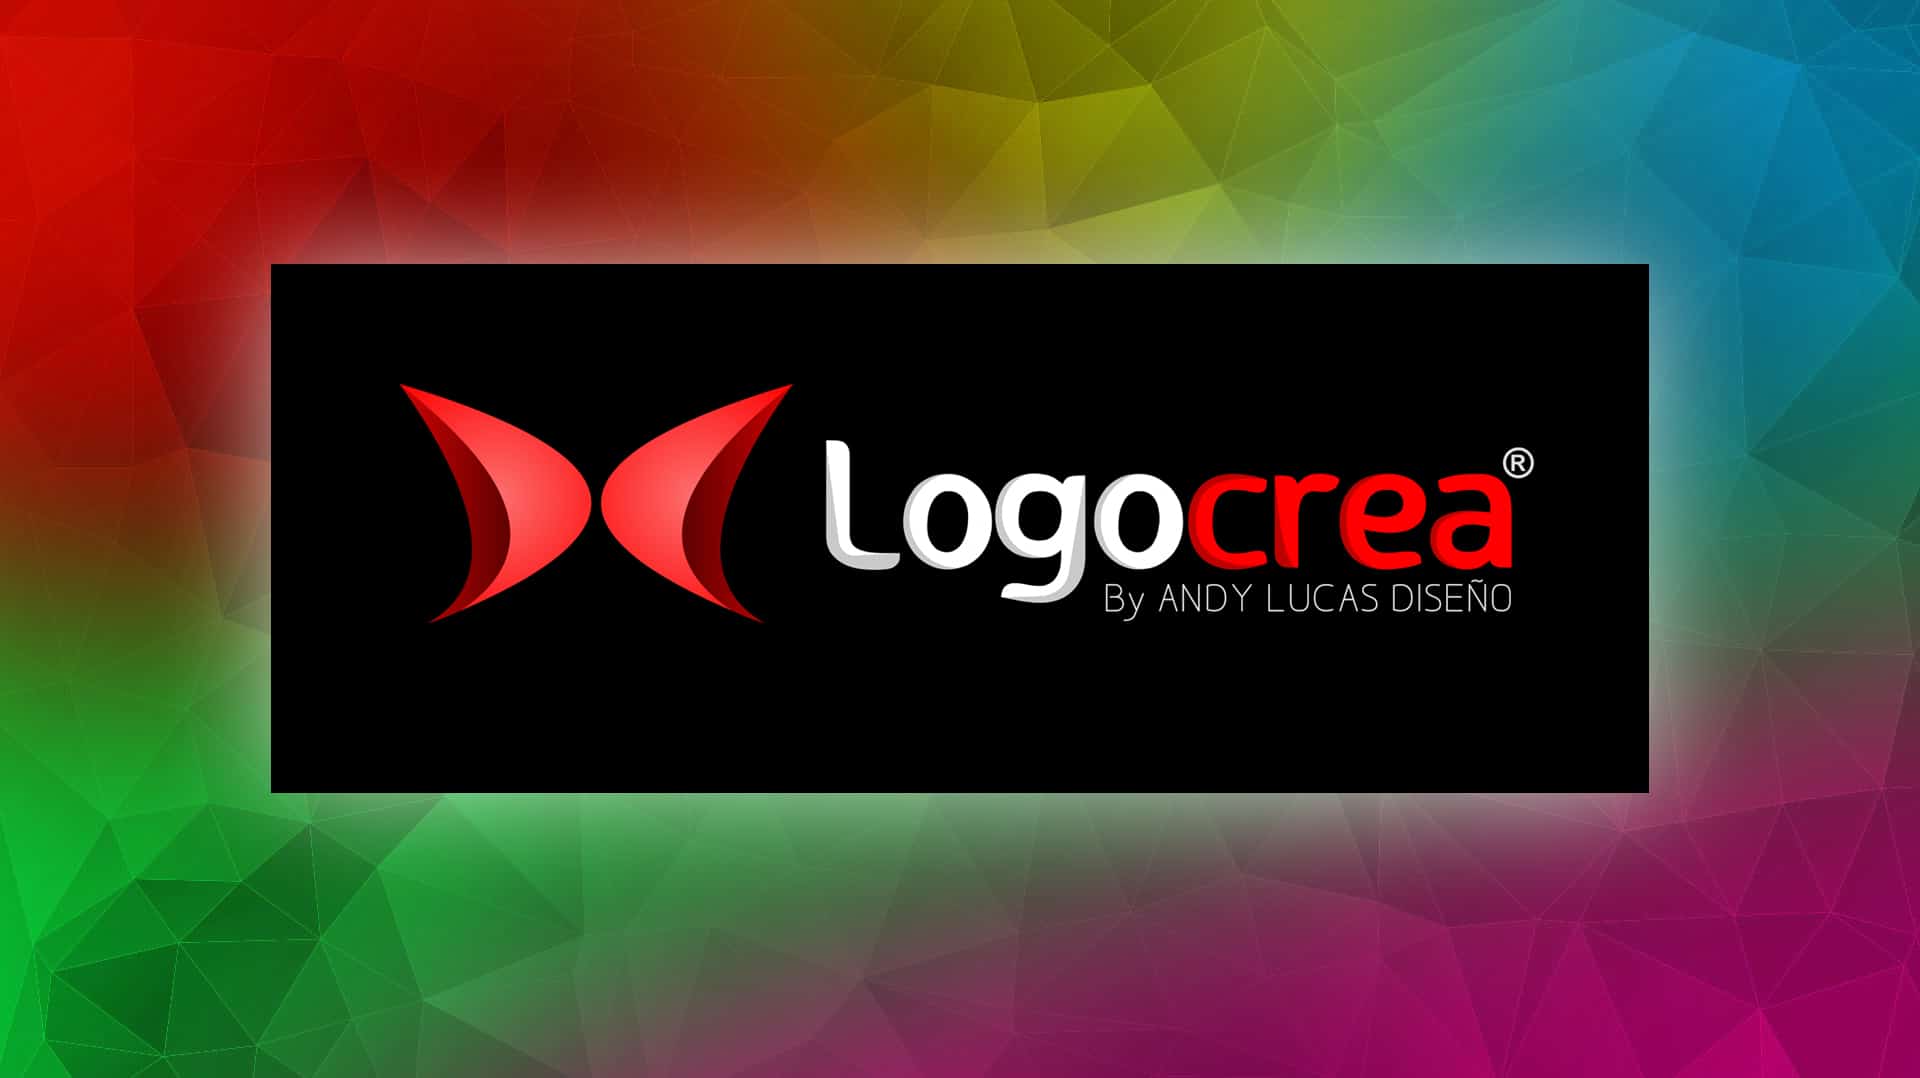 Logoplus Diseño De Logotipos Para Empresas Logocrea® Diseño De